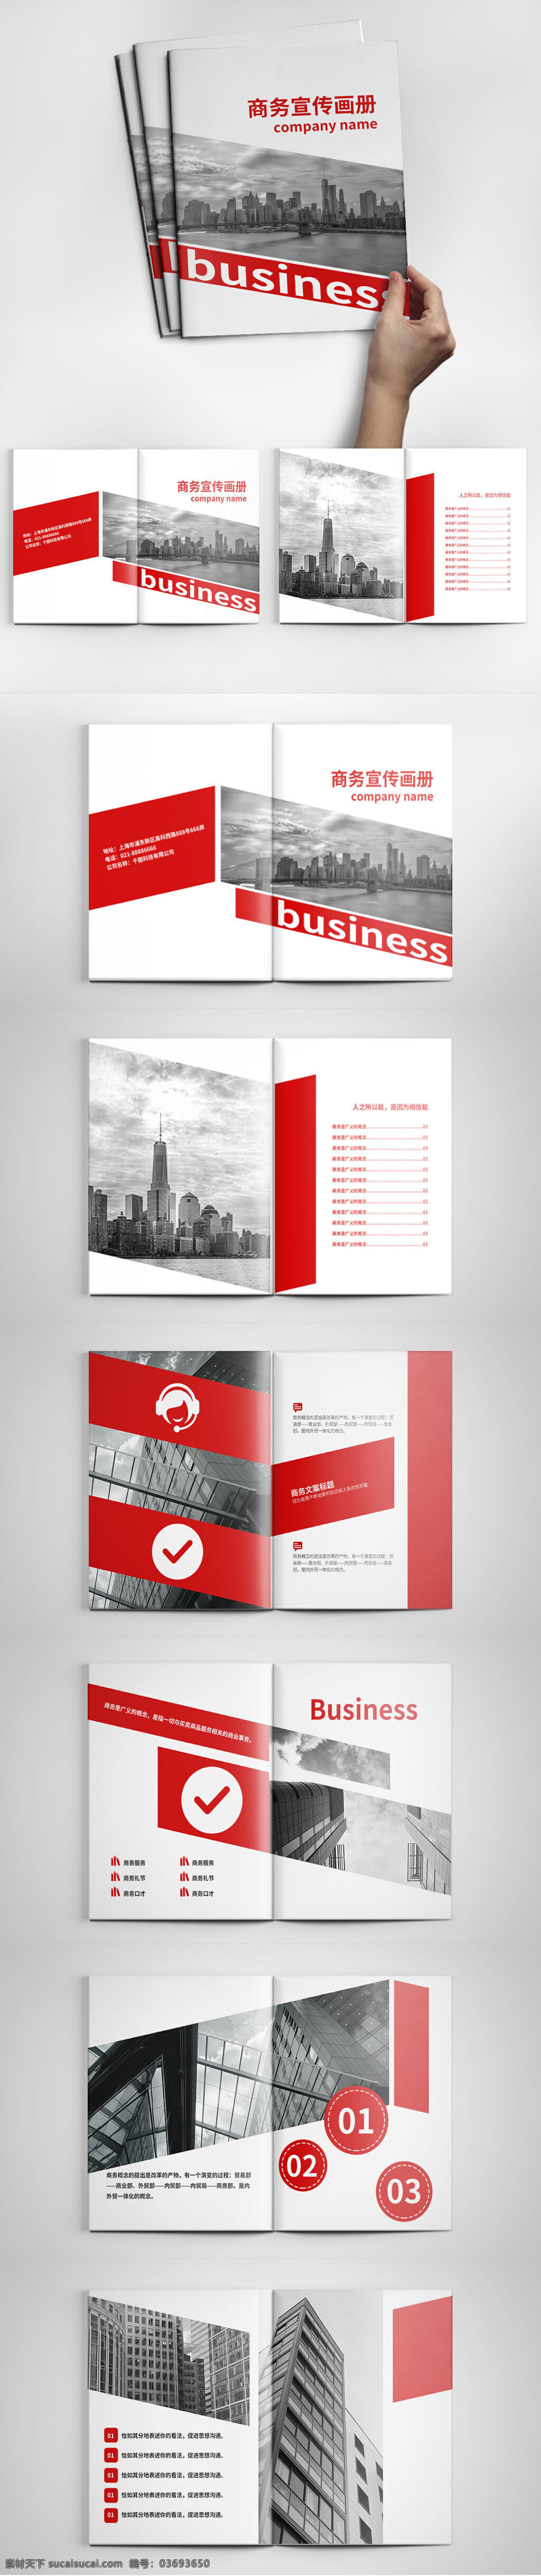 创意 红色 商务 画册设计 模板 大气画册 高档画册 公司画册 红色画册 画册模板 商务画册 宣传画册